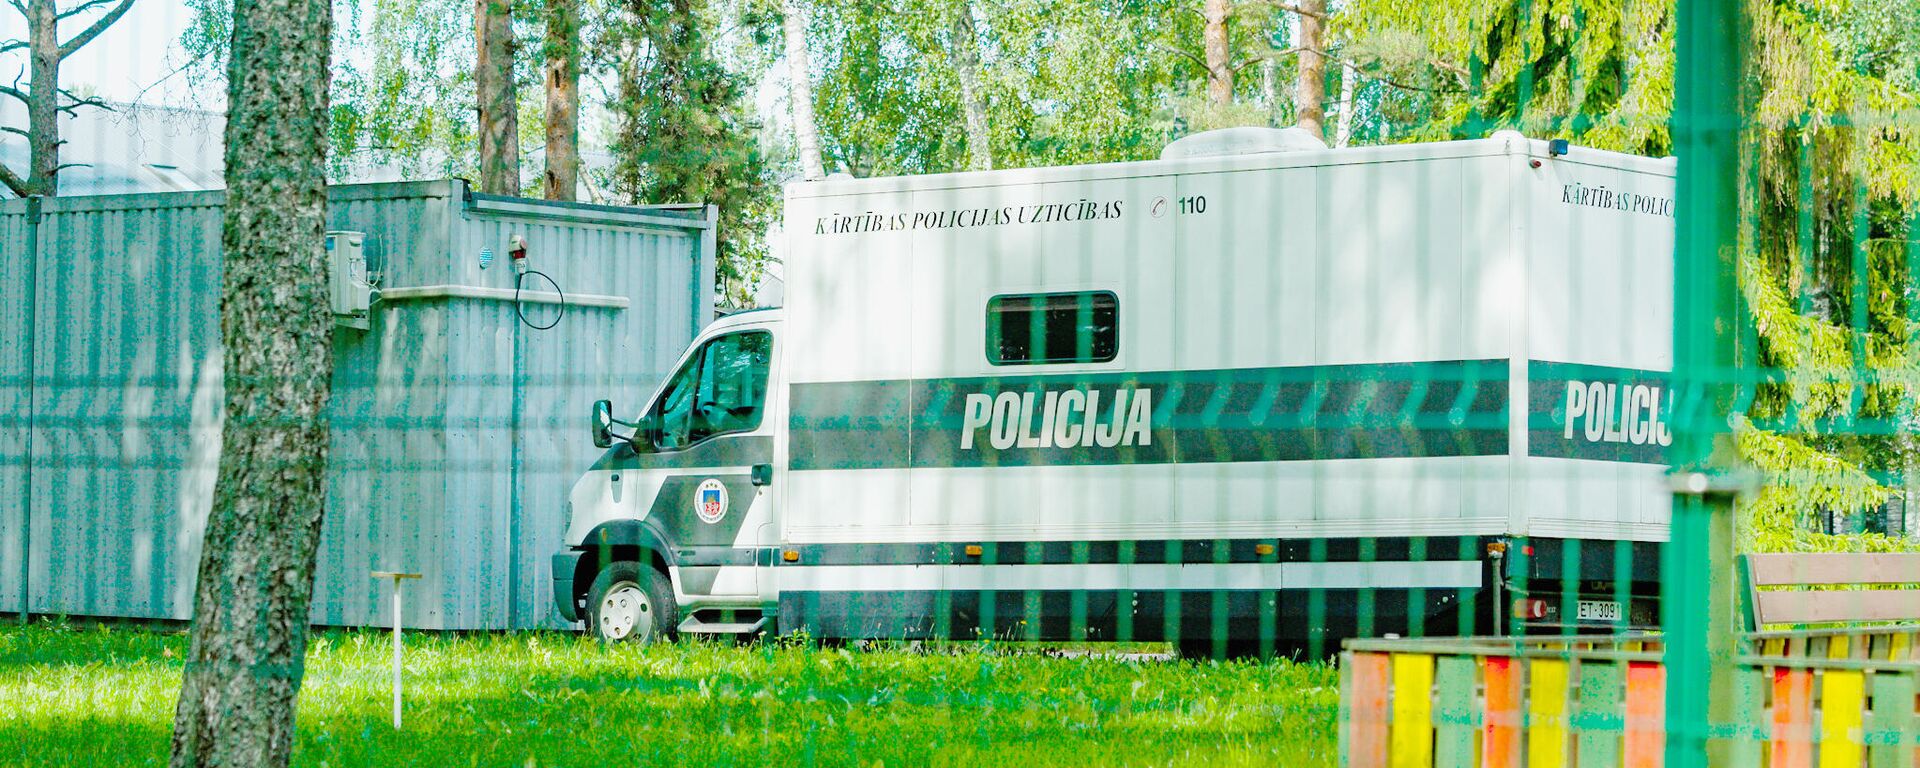 Полицейская машина для перевозки задержанных в Центре размещения беженцев в Муцениеки - Sputnik Латвия, 1920, 10.09.2021